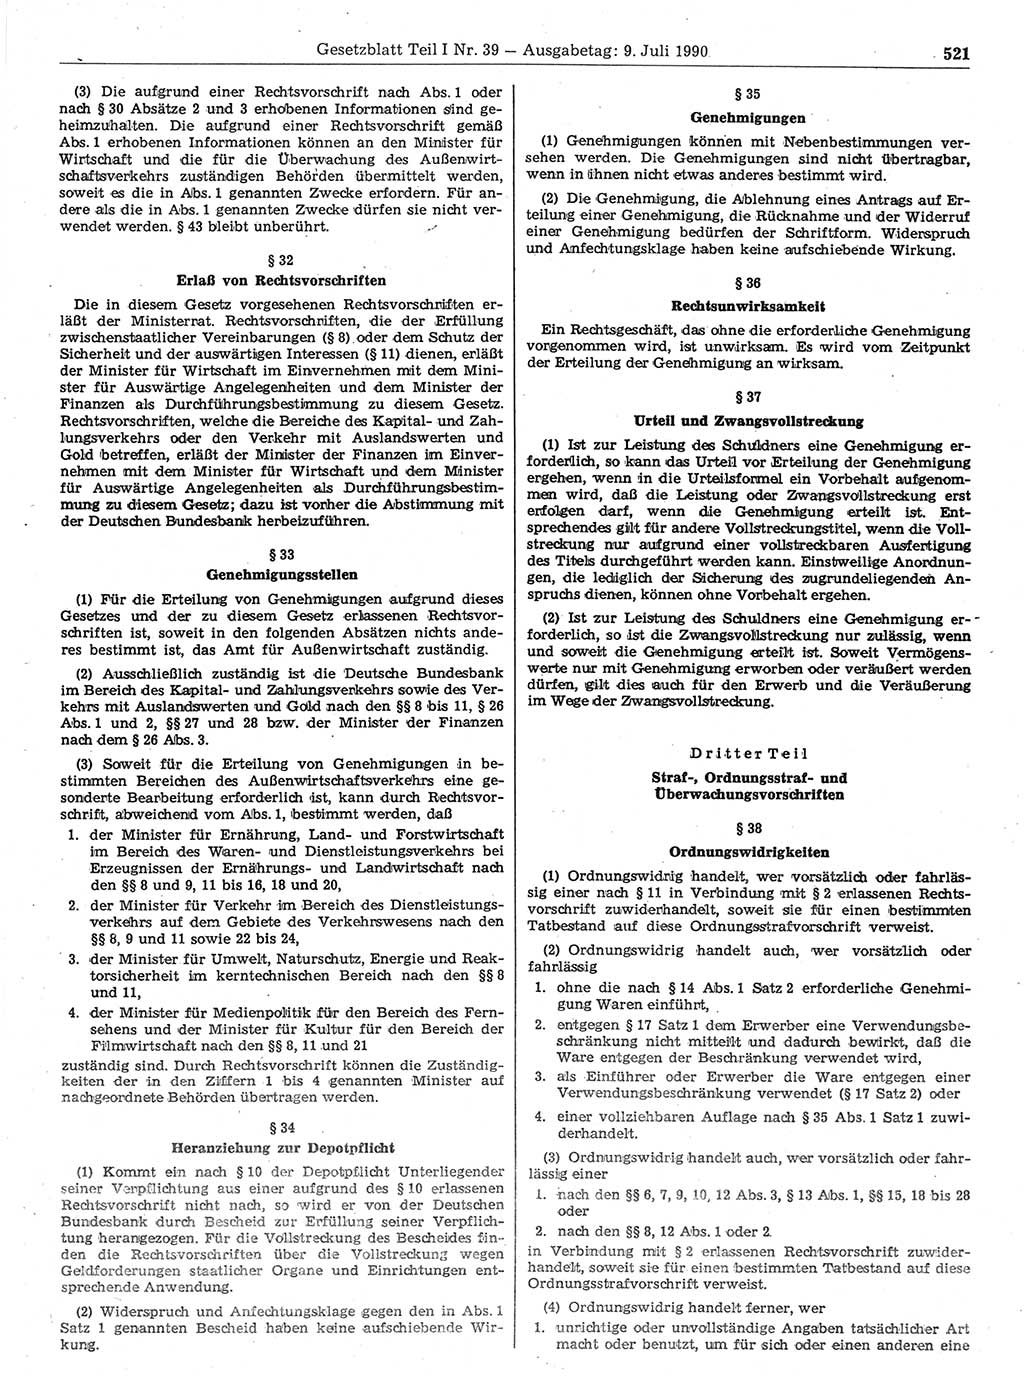 Gesetzblatt (GBl.) der Deutschen Demokratischen Republik (DDR) Teil Ⅰ 1990, Seite 521 (GBl. DDR Ⅰ 1990, S. 521)